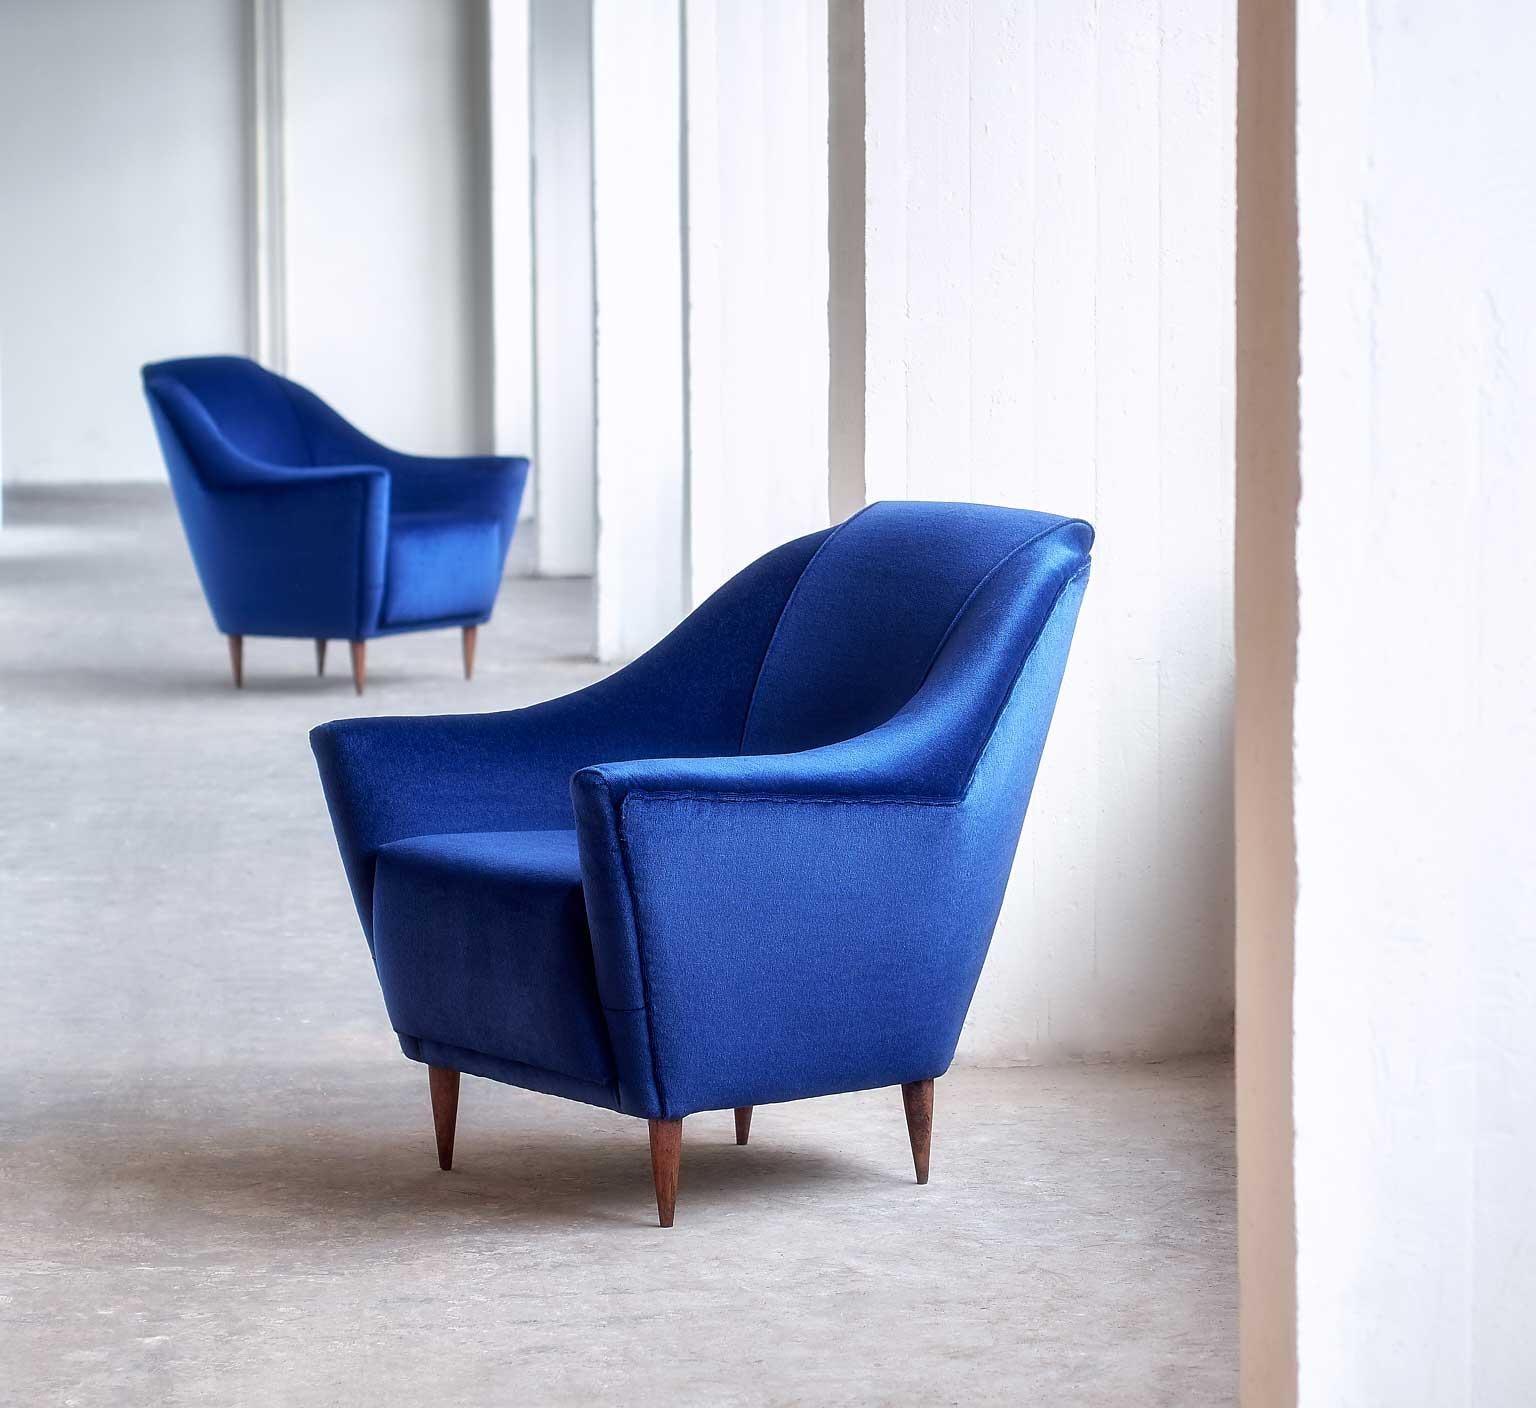 Ces somptueux fauteuils ont été conçus par Ico Parisi en 1951. Ce modèle particulier a été fabriqué par Ariberto Colombo à Cantu, en Italie. 
Les courbes et les lignes prononcées du design confèrent aux chaises un aspect moderne et élégant. Les